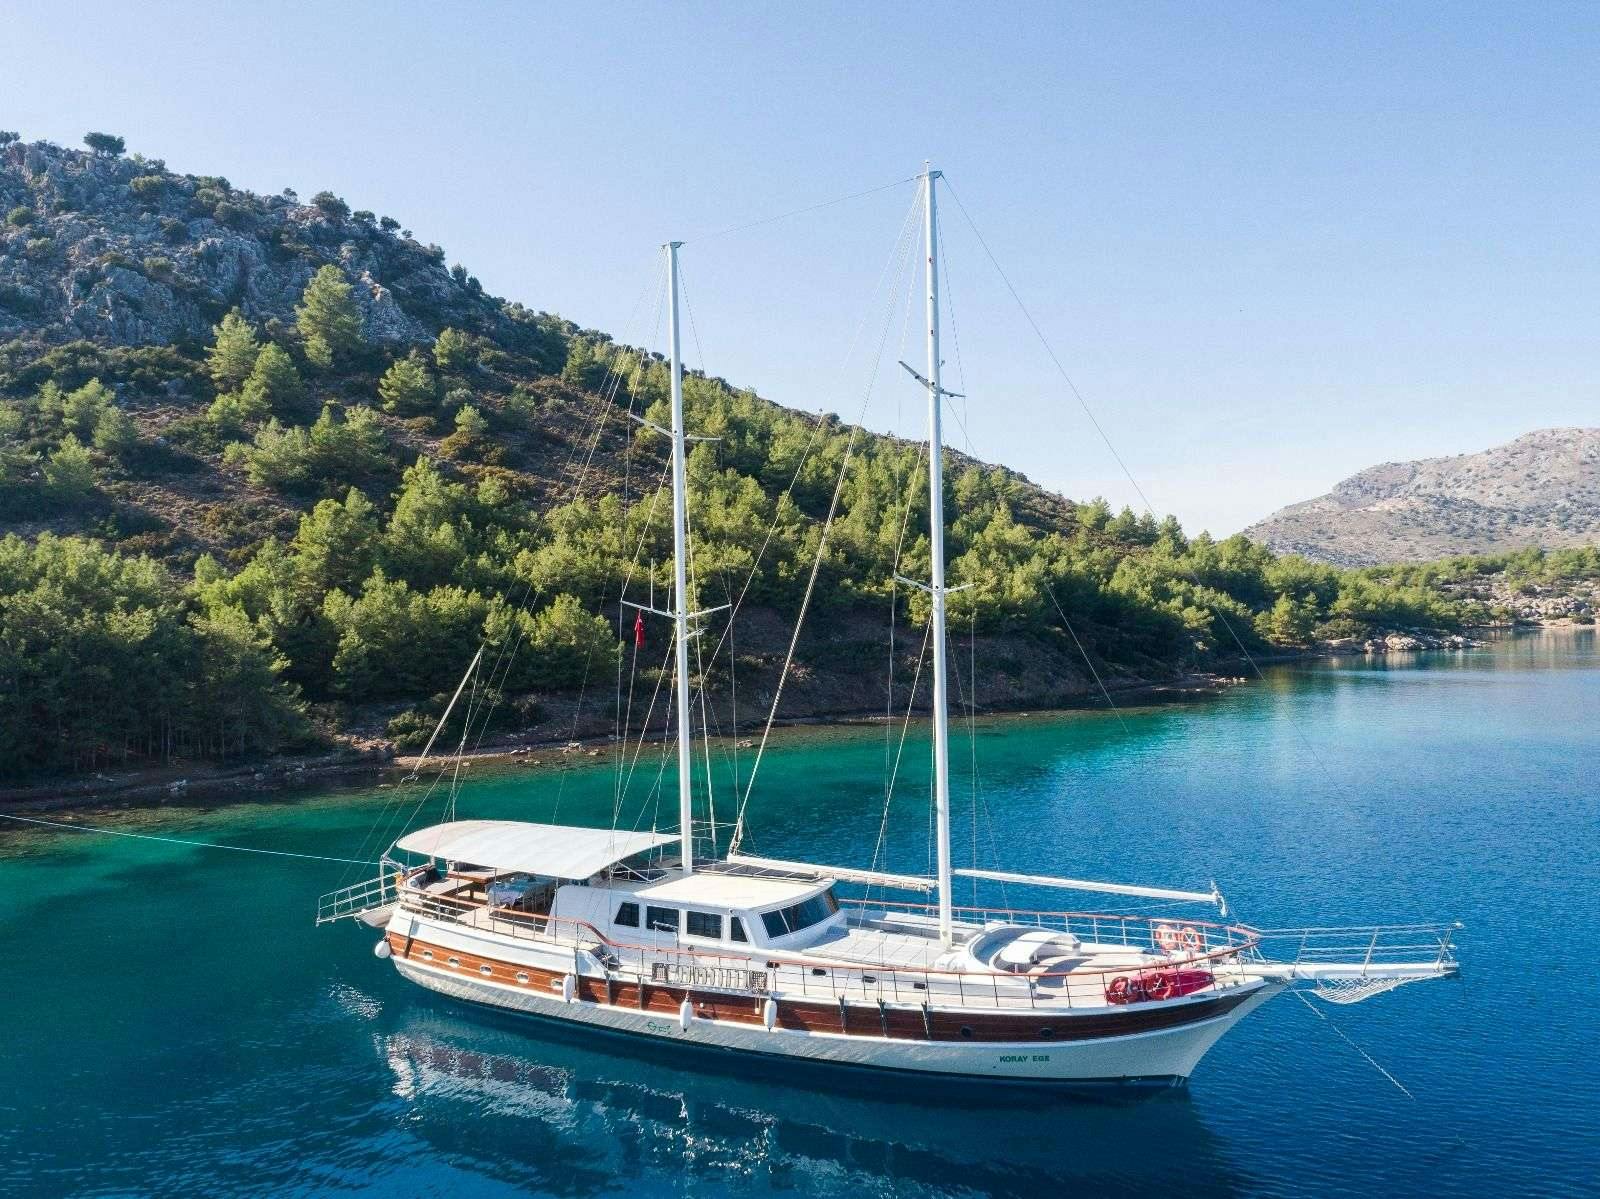 koray ege - Luxury yacht charter worldwide & Boat hire in Greece & Turkey 1